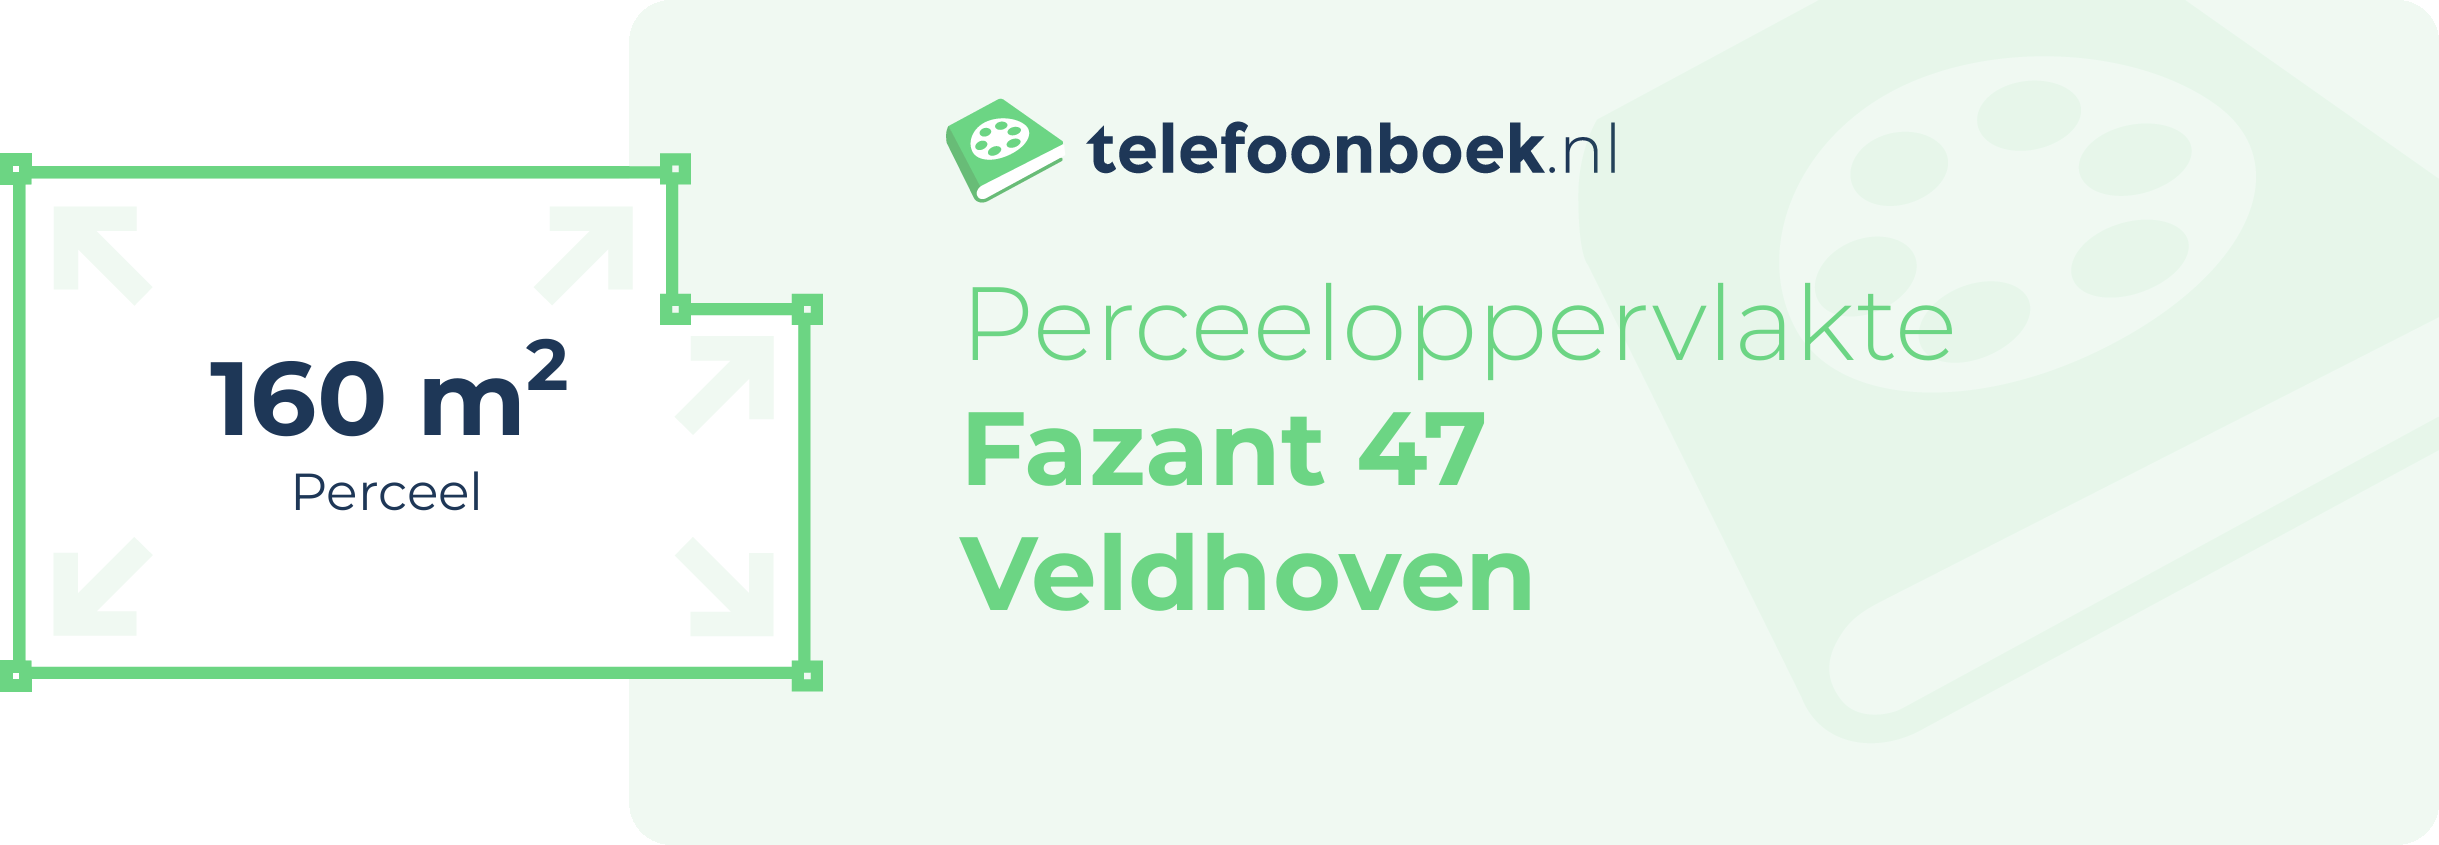 Perceeloppervlakte Fazant 47 Veldhoven